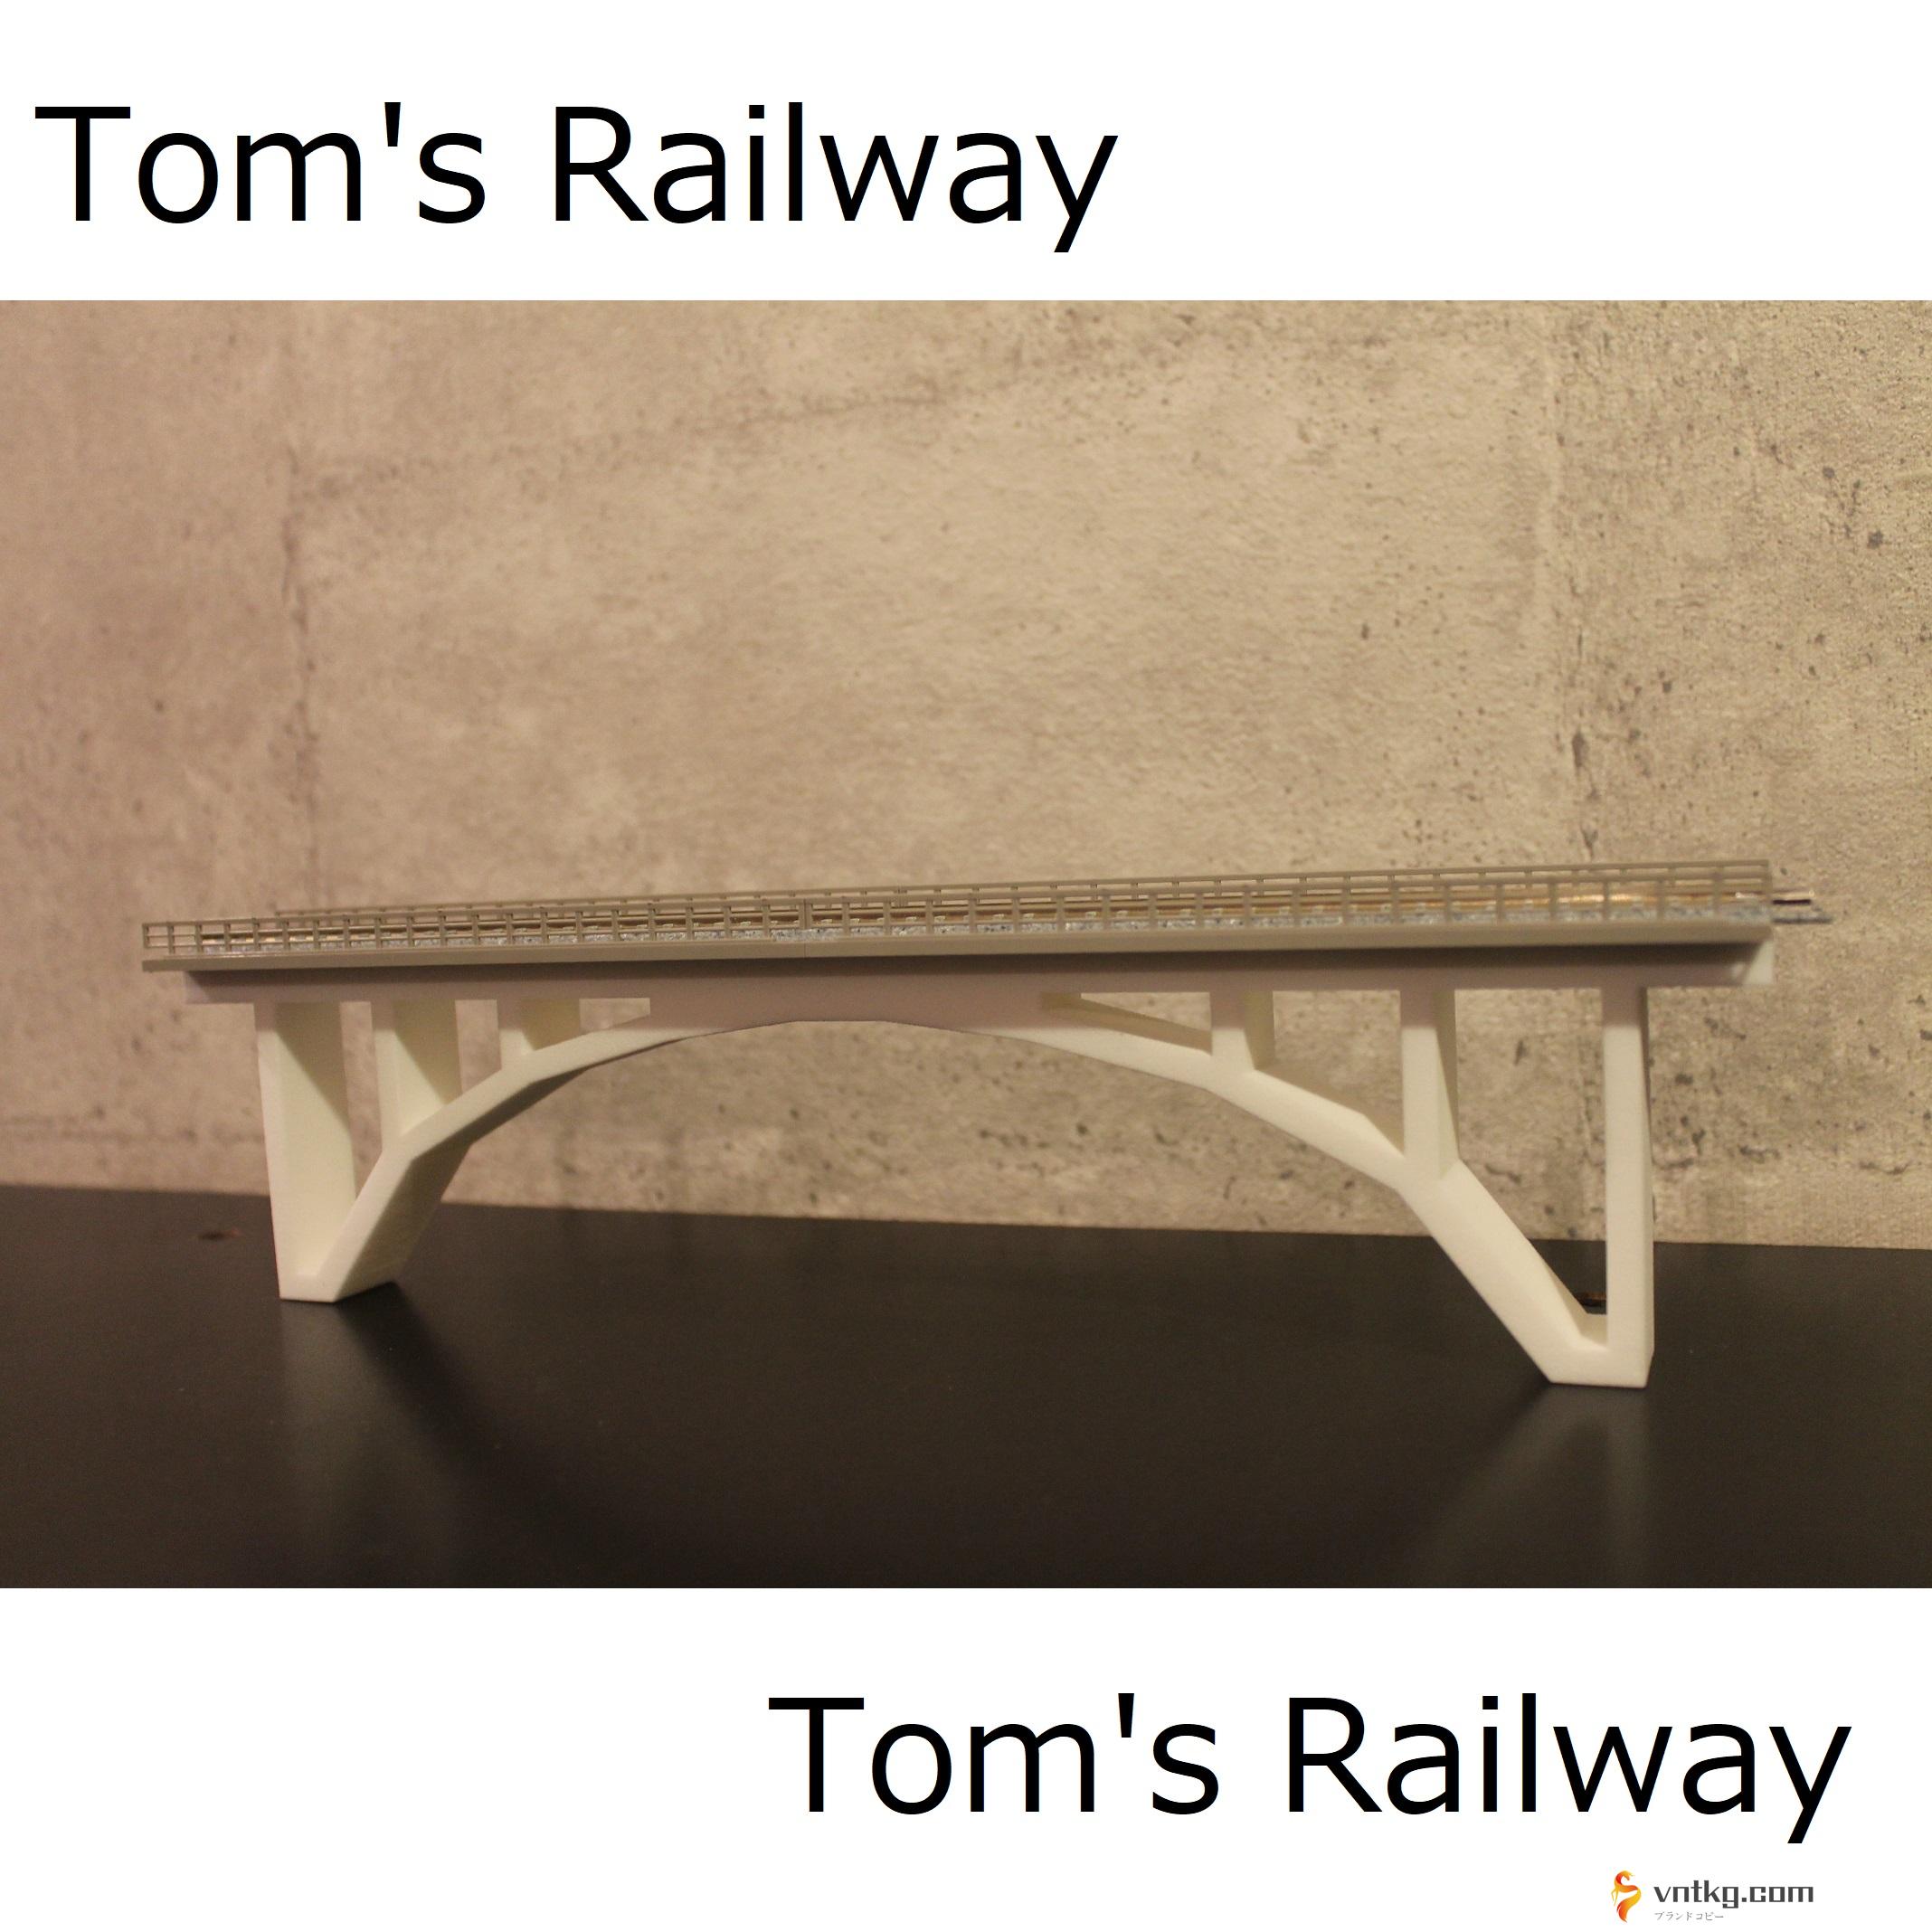 Tom's Railway